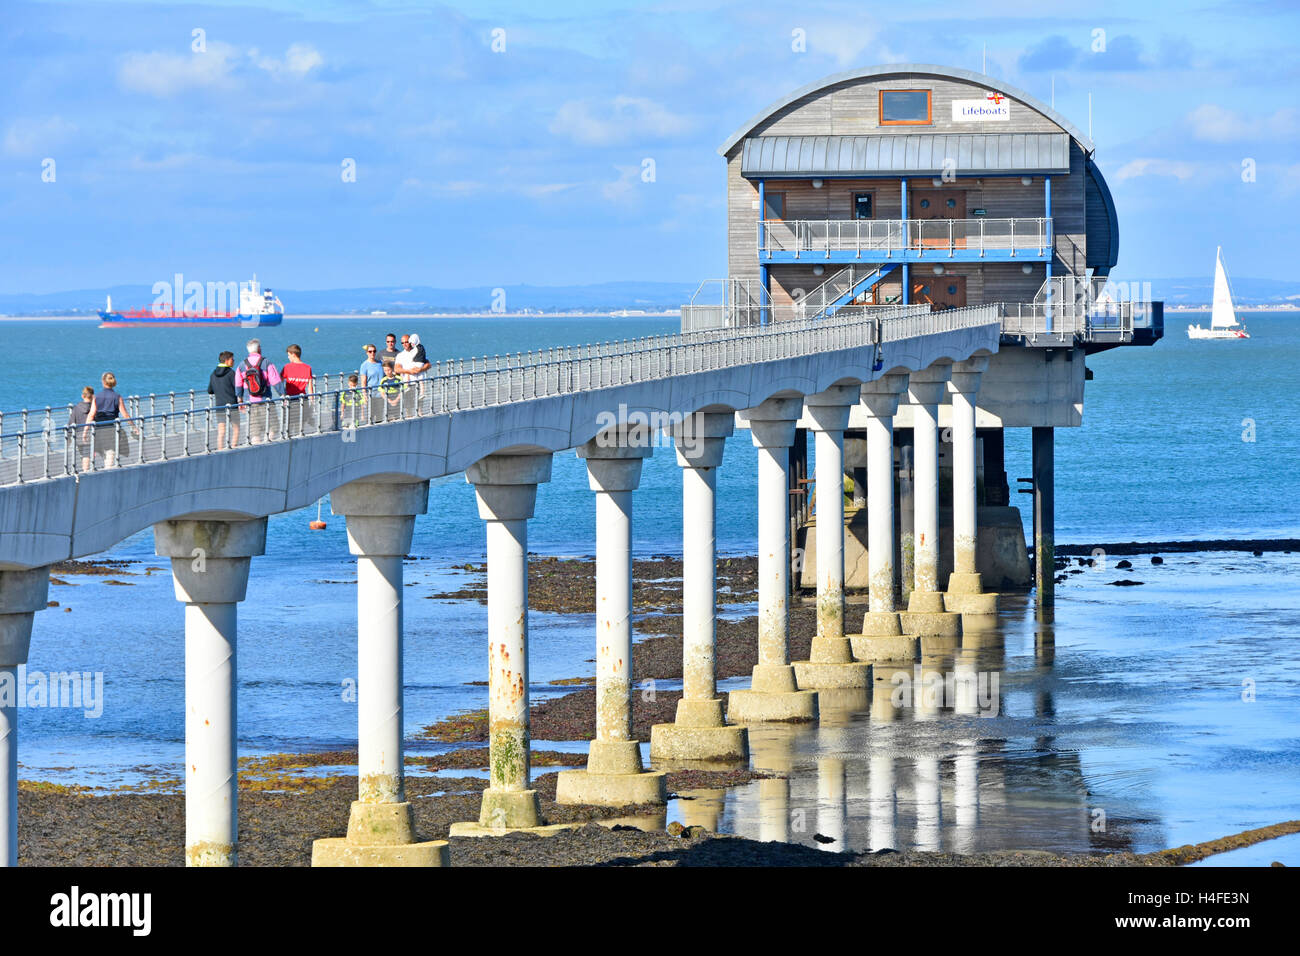 Le persone che visitano Bembridge Isle of Wight RNLI UK scialuppa di salvataggio molo stazione costruita su elevò piattaforma impilati con passerella su pilastri in calcestruzzo Solent oltre Foto Stock